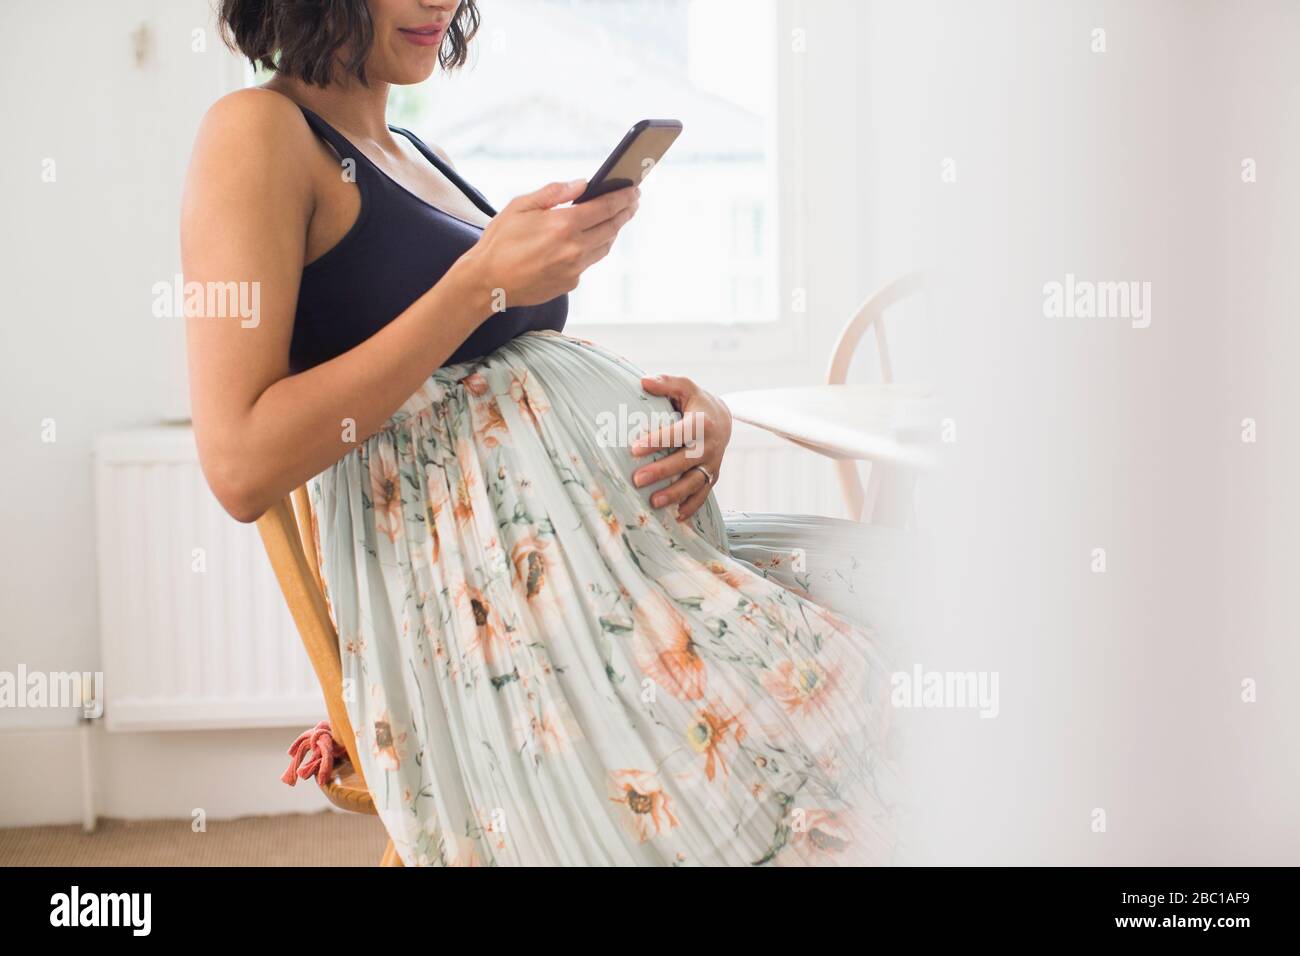 Femme enceinte dans une jupe fleurie tenant l'estomac Banque D'Images